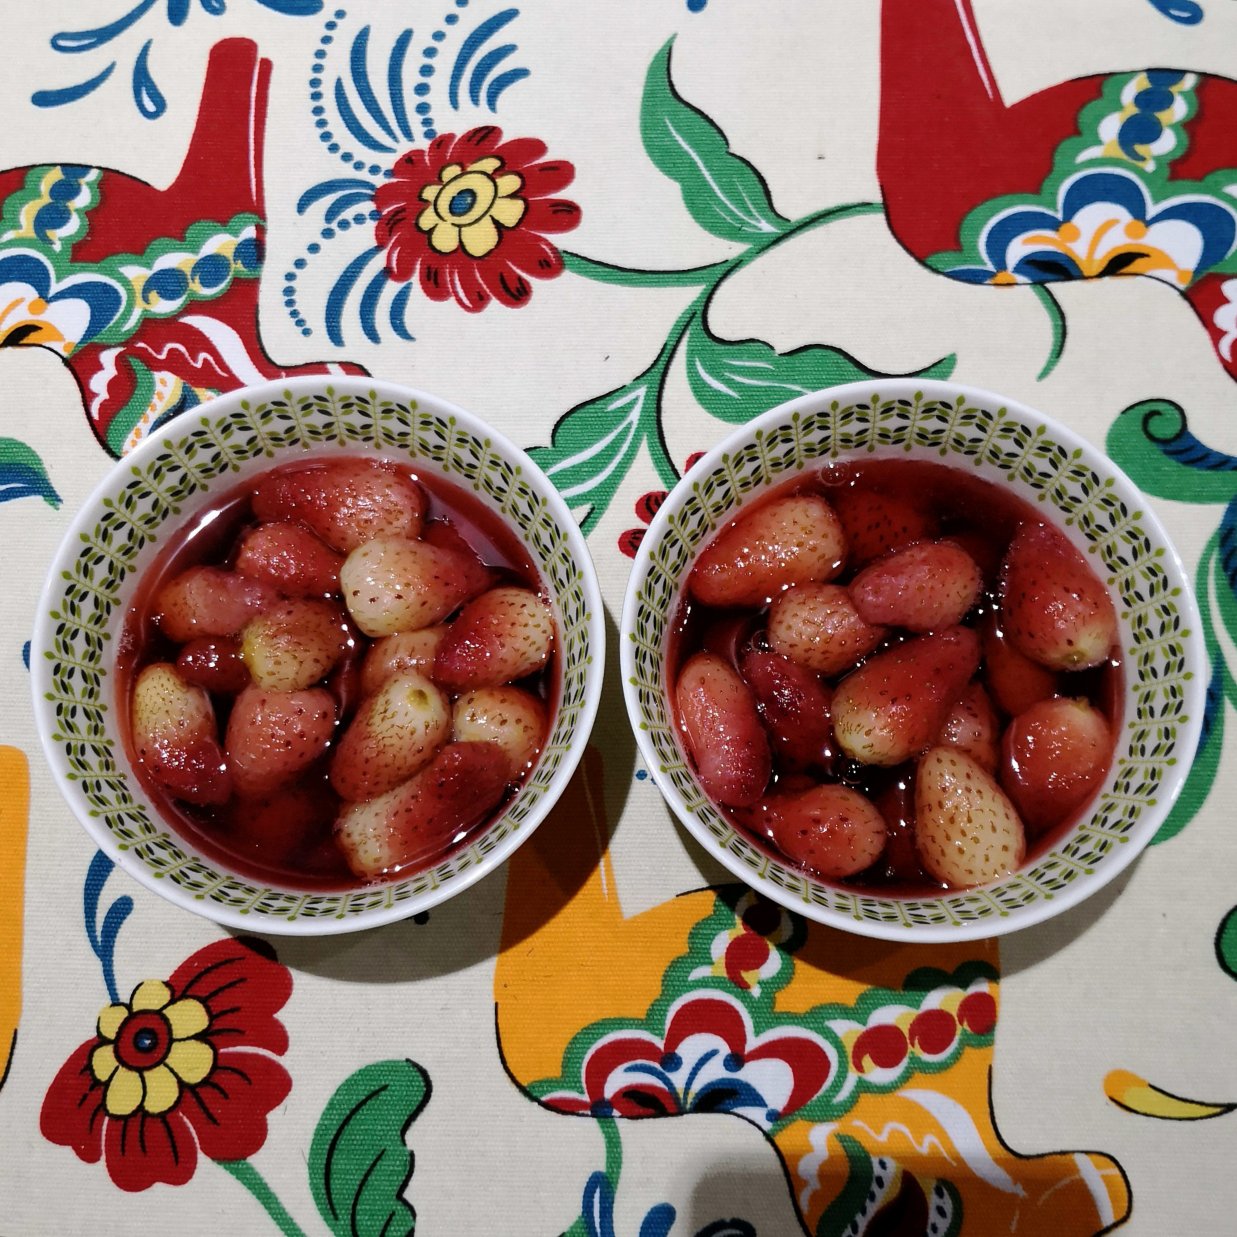 糖水草莓